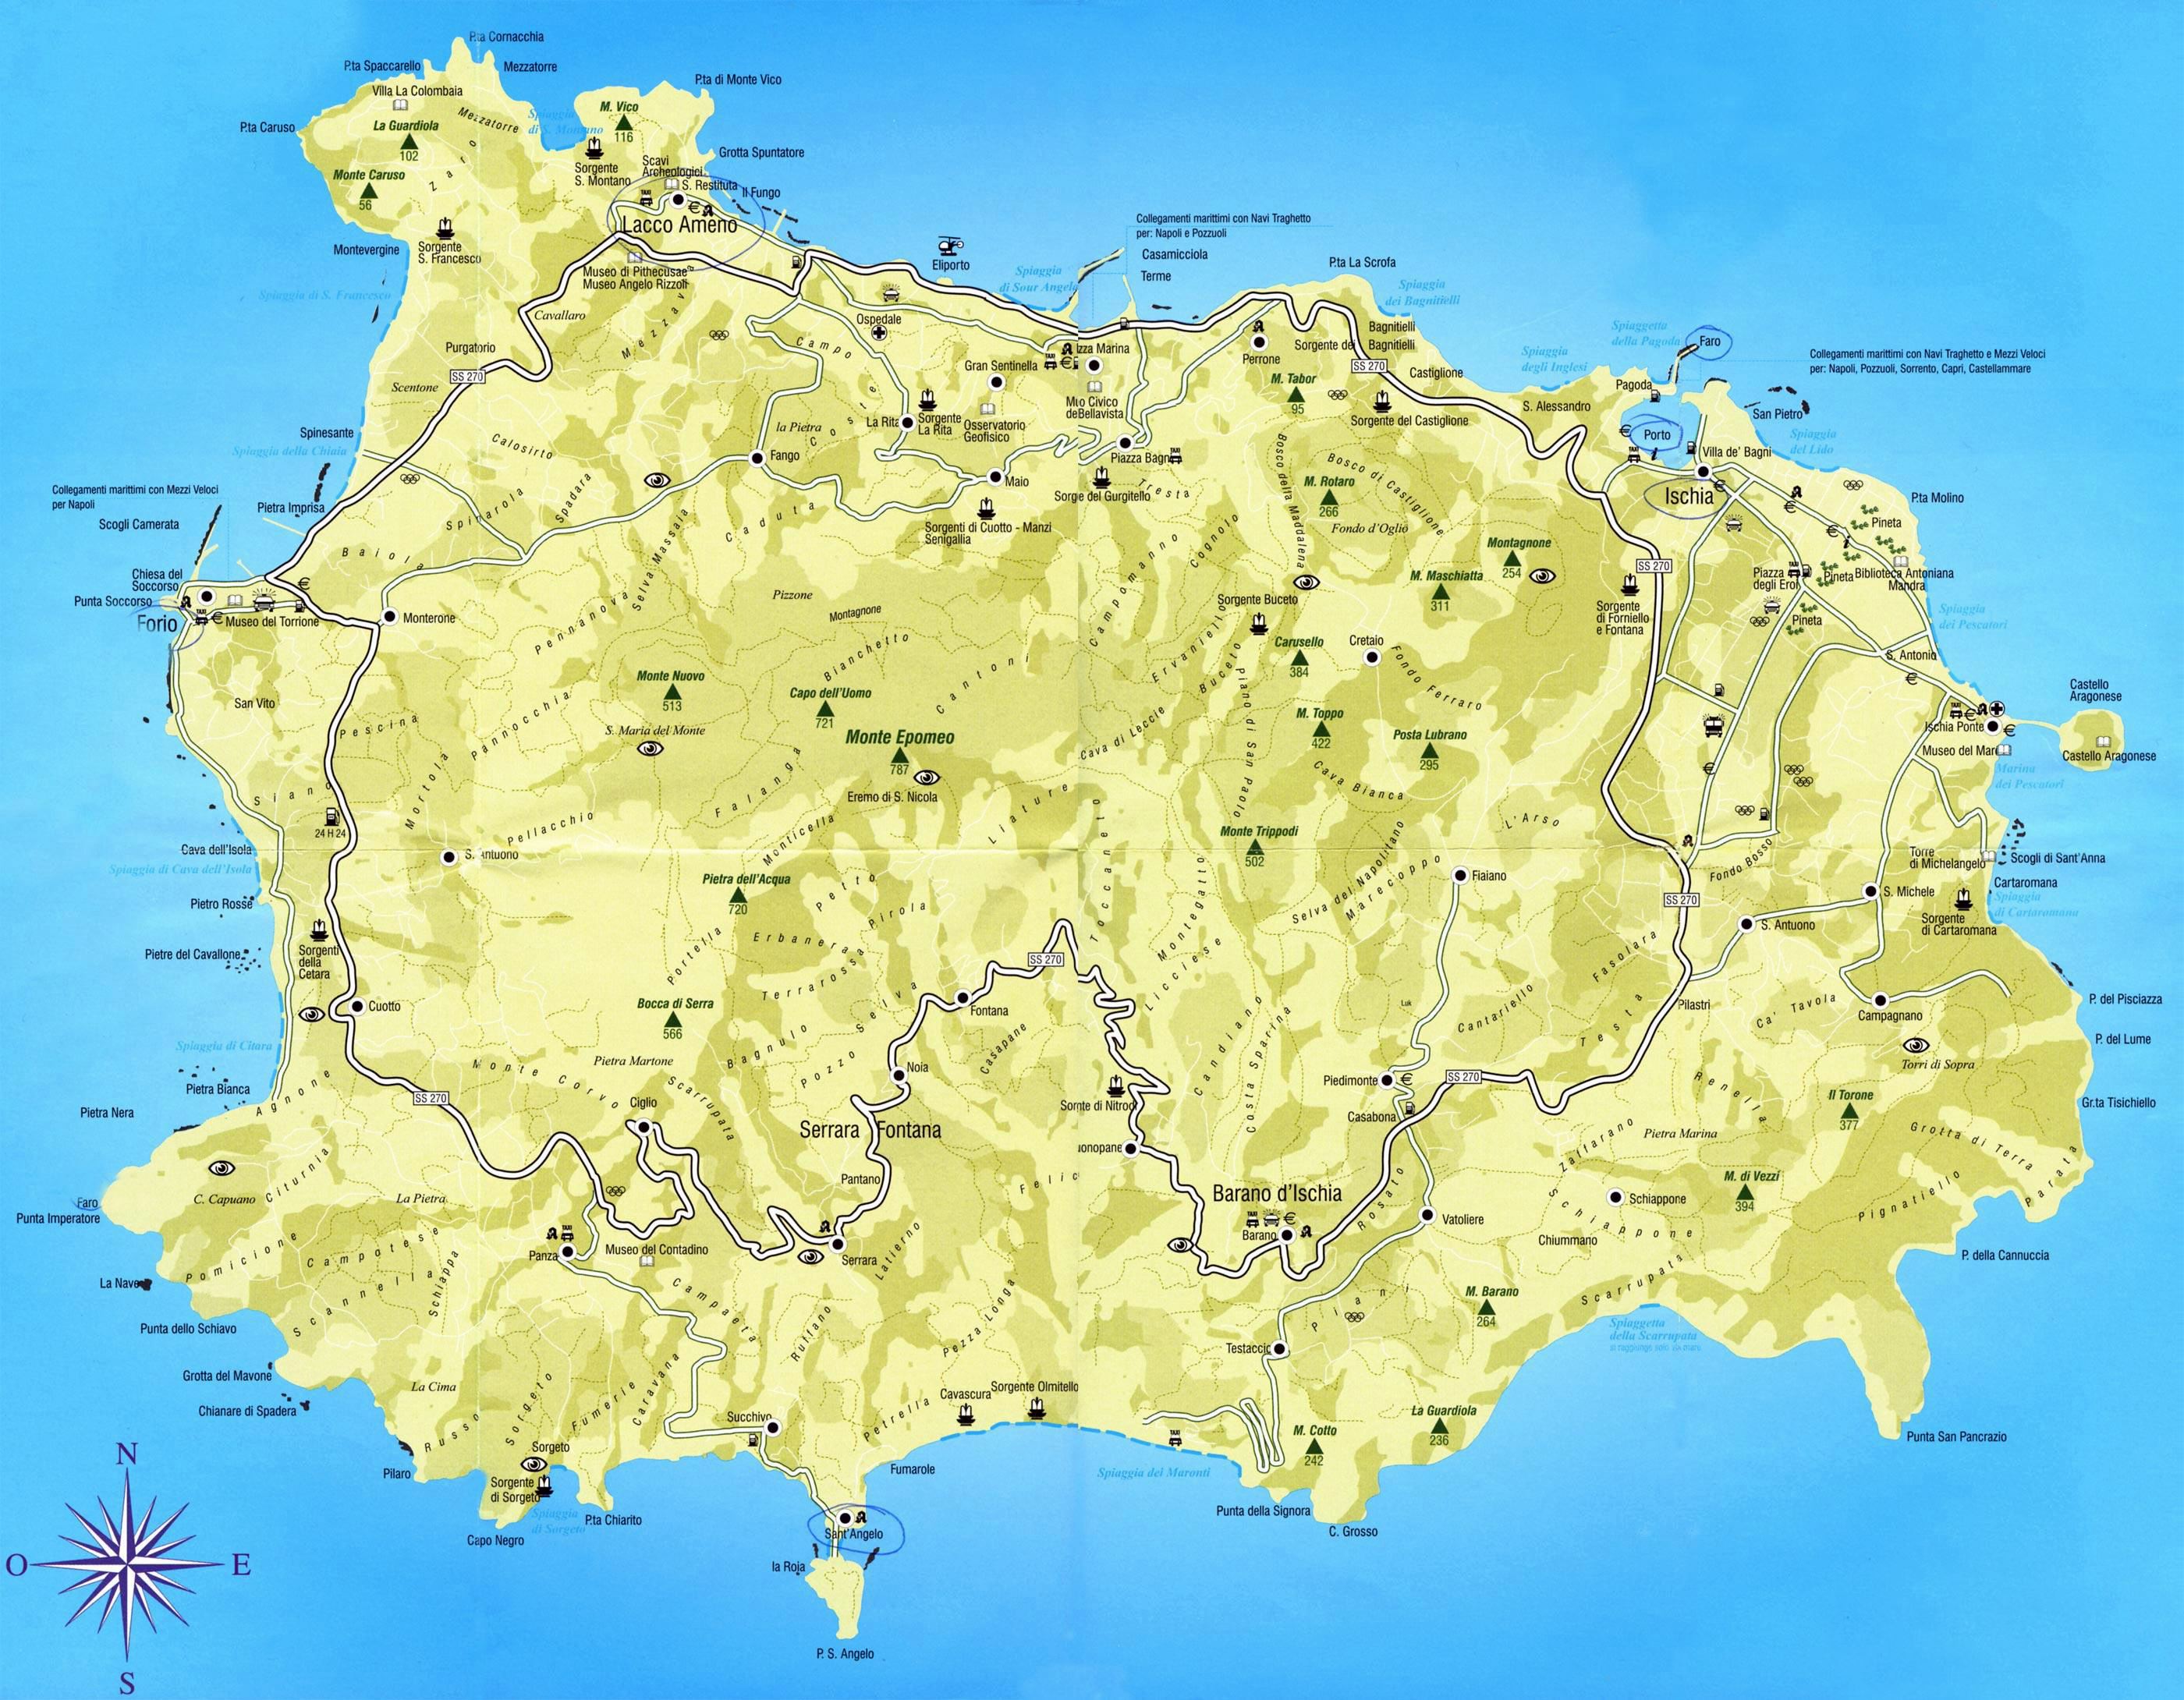 Cartina Ischia